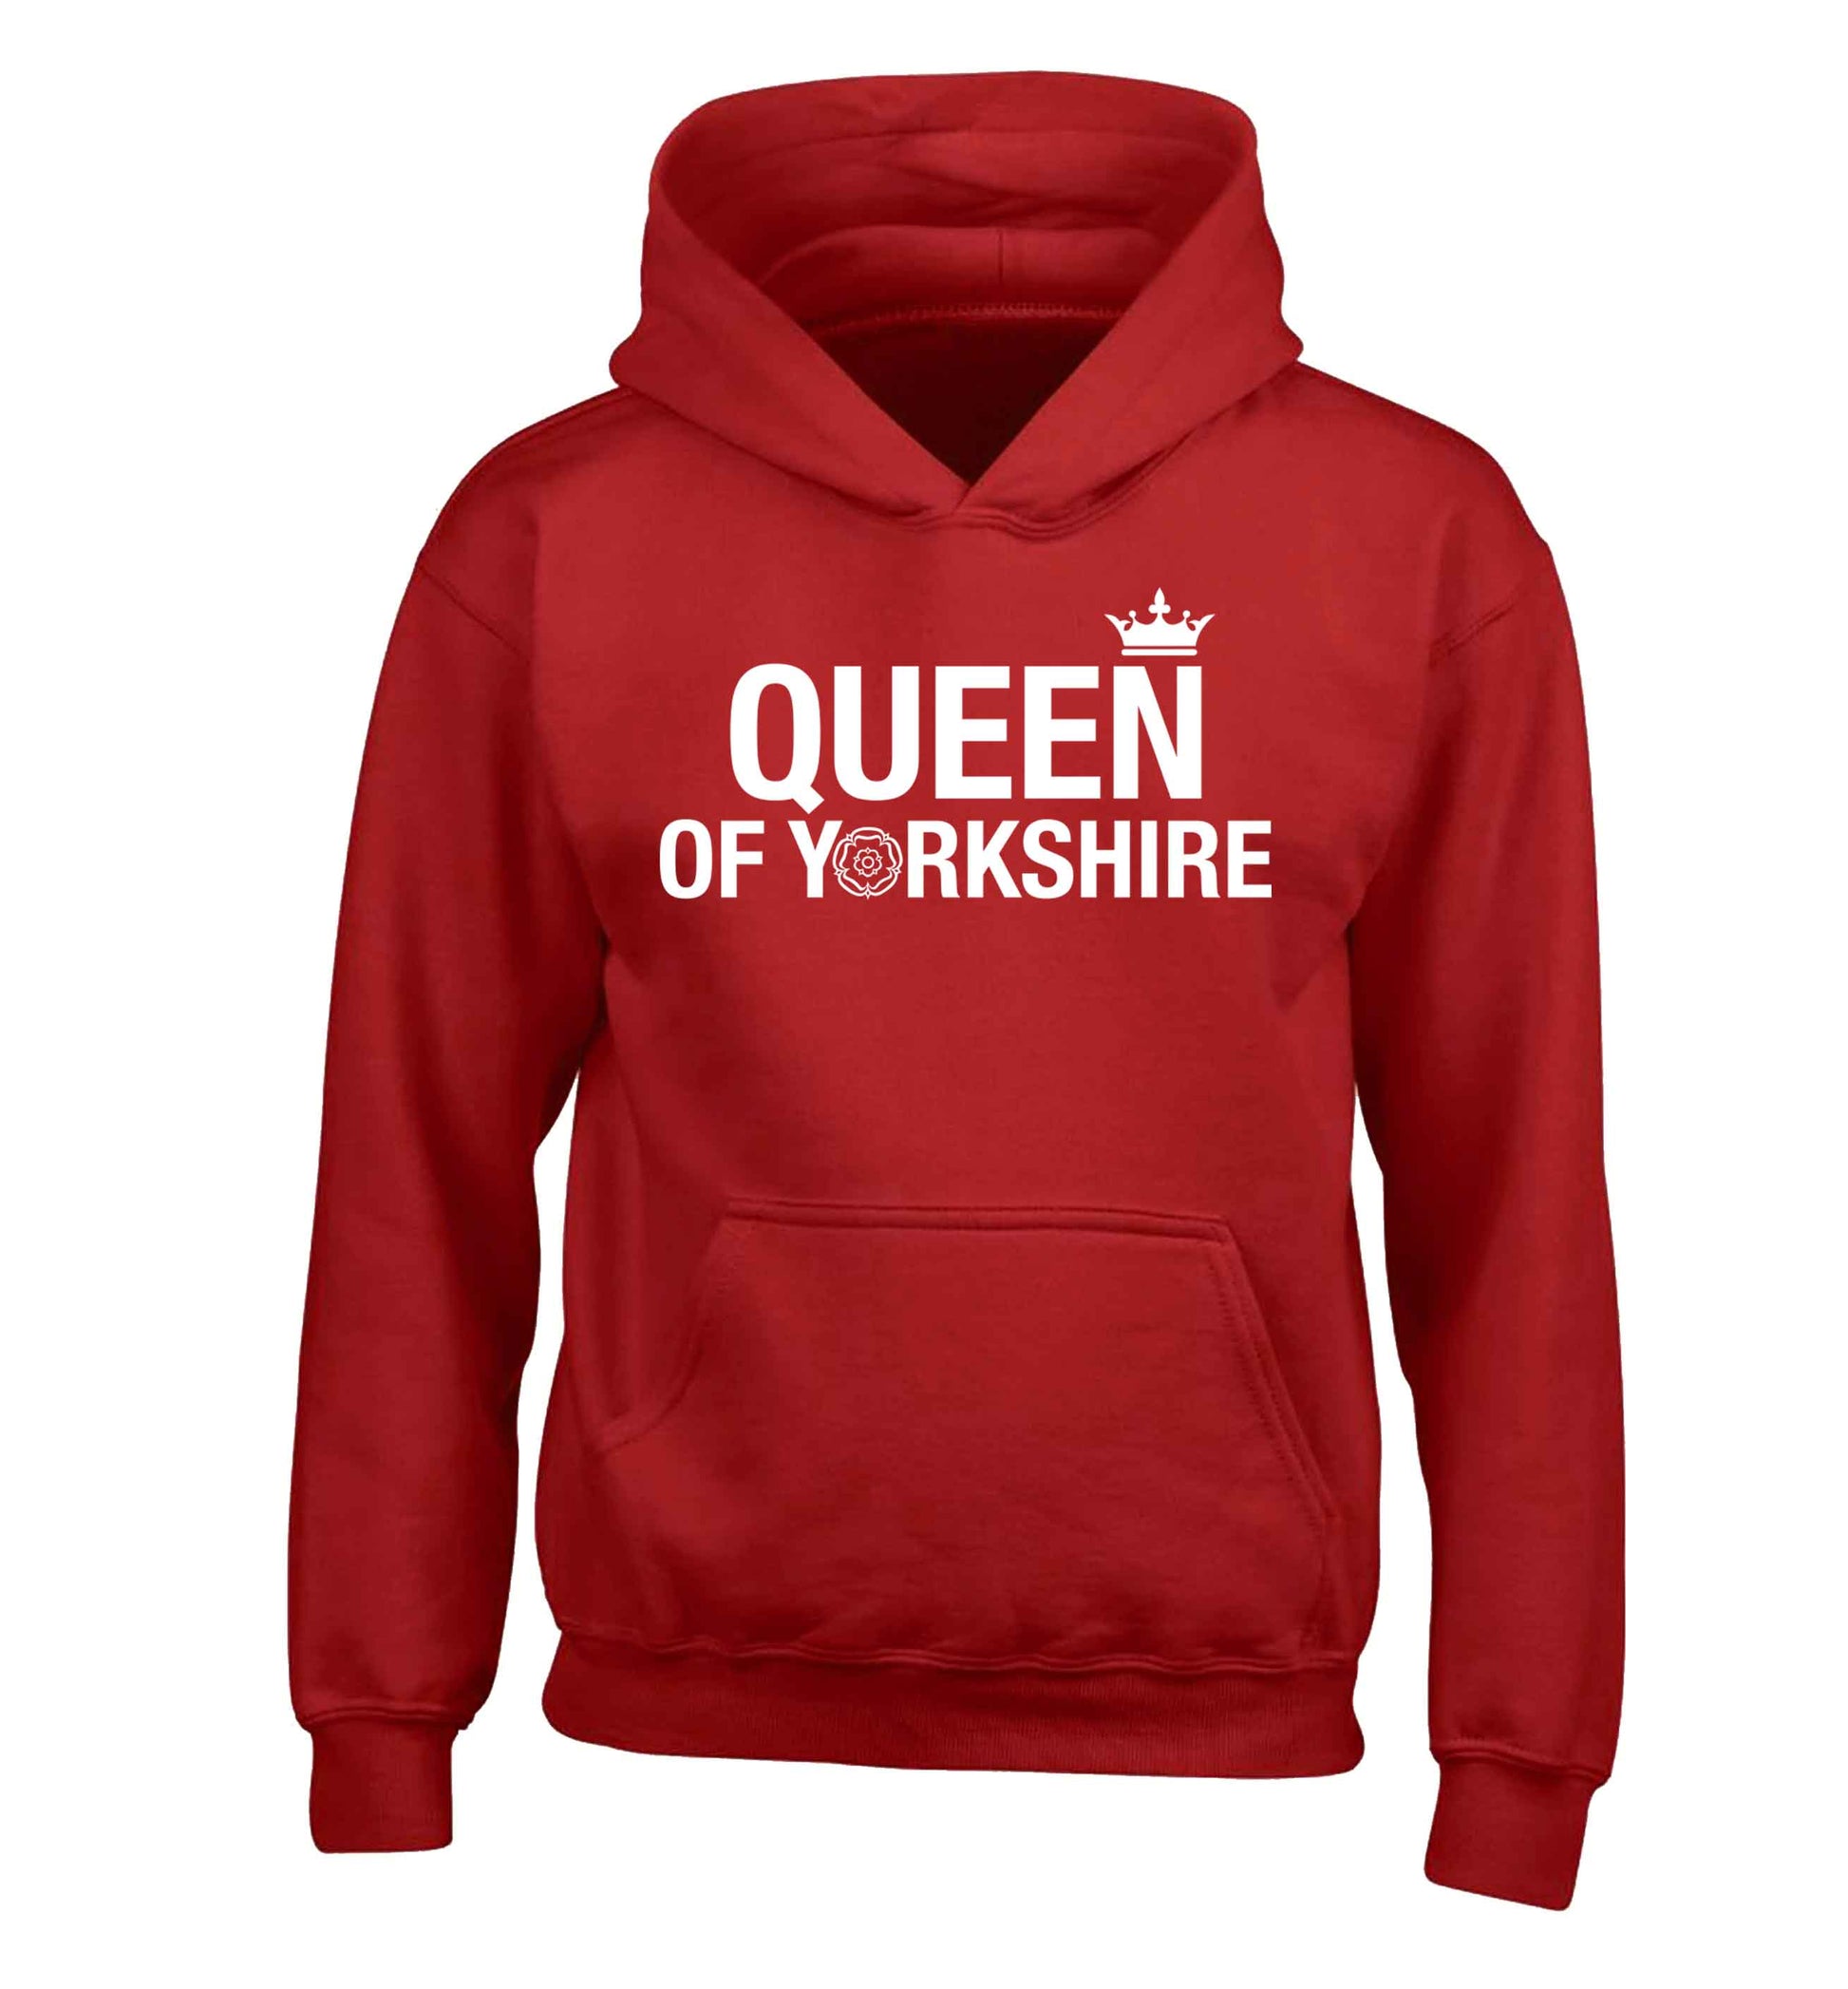 Queen of Yorkshire children's red hoodie 12-13 Years